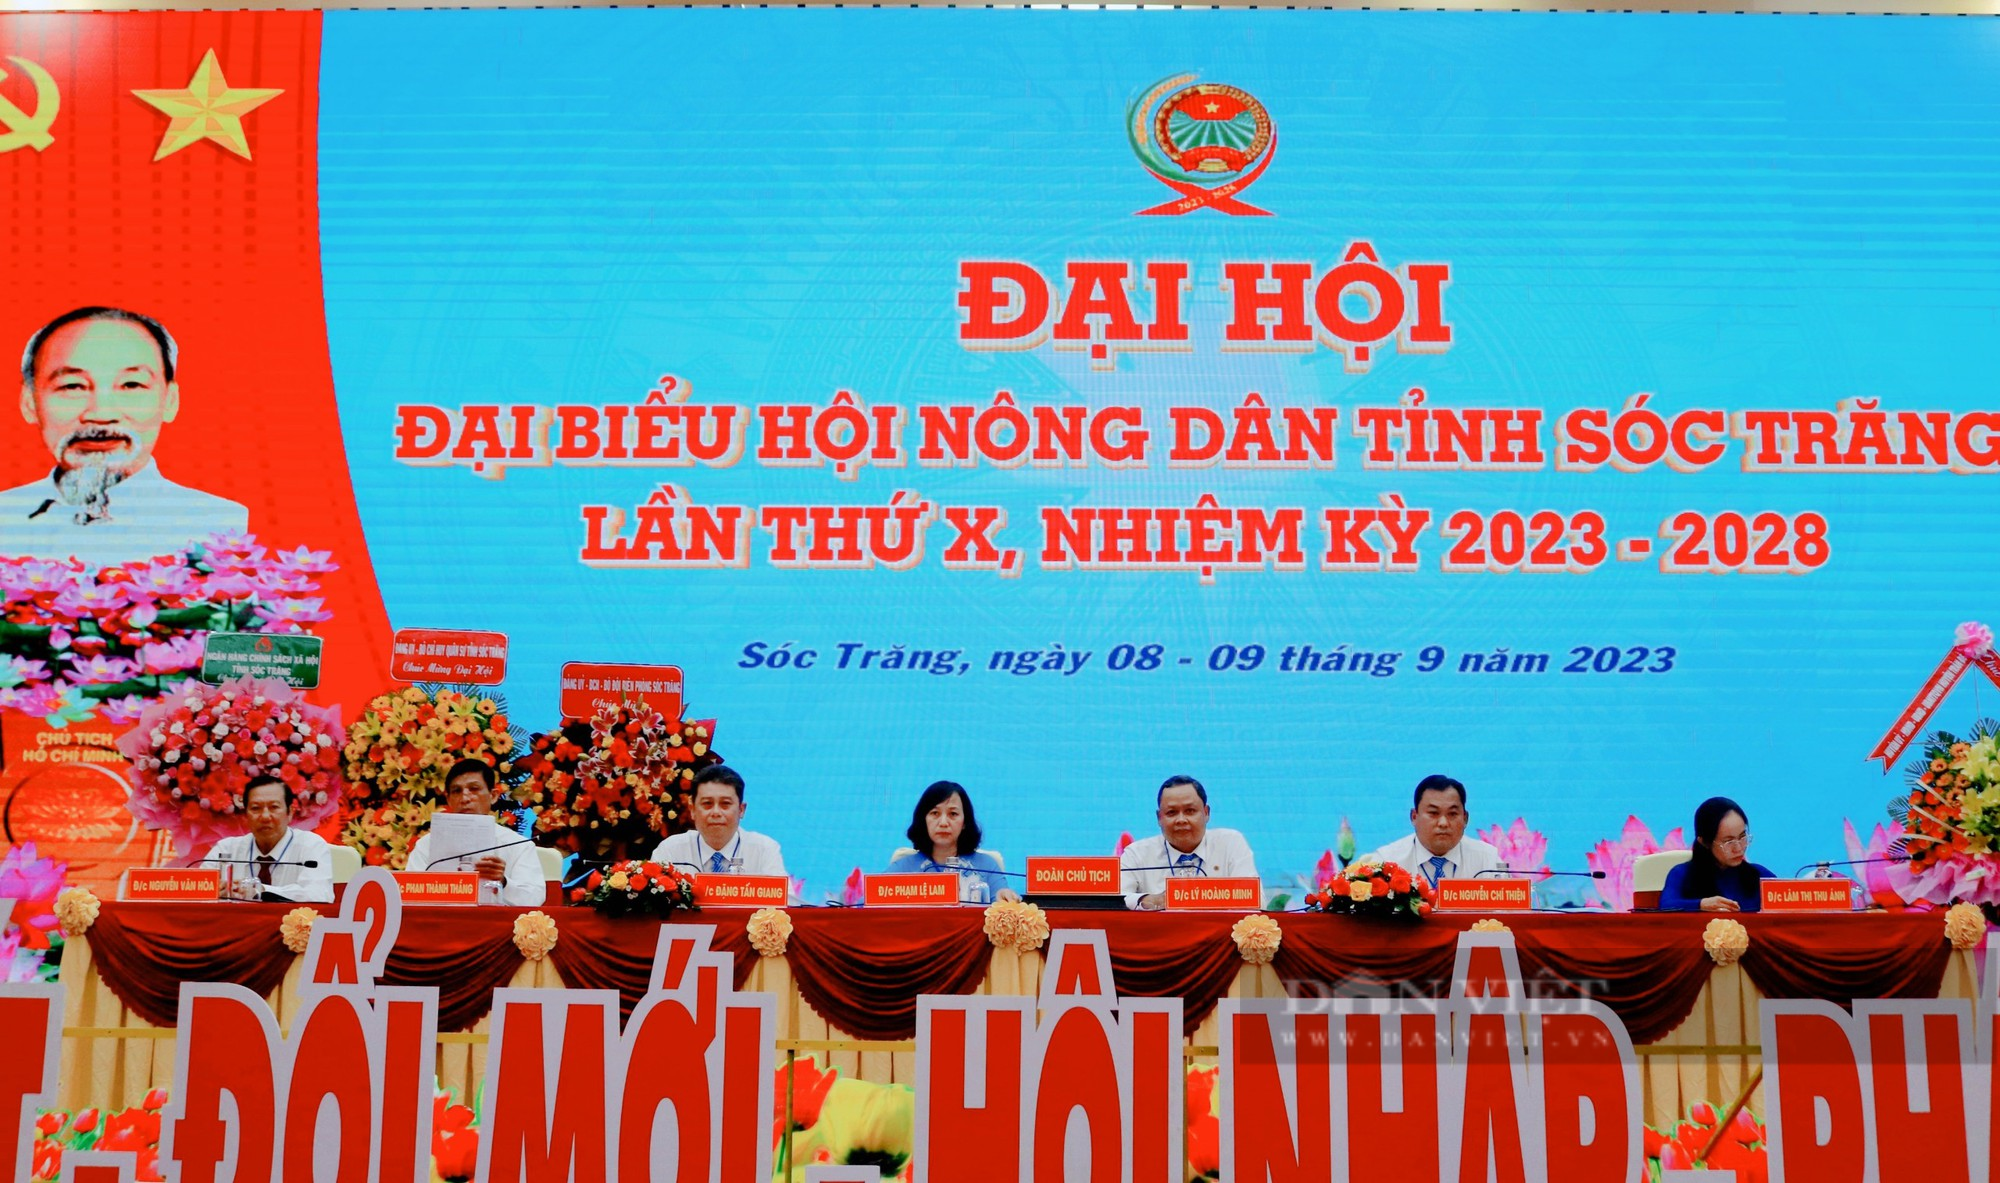  246 đại biểu tiêu biểu dự Đại hội Hội Nông dân tỉnh Sóc Trăng khóa X, nhiệm kỳ 2023 - 2028 - Ảnh 2.